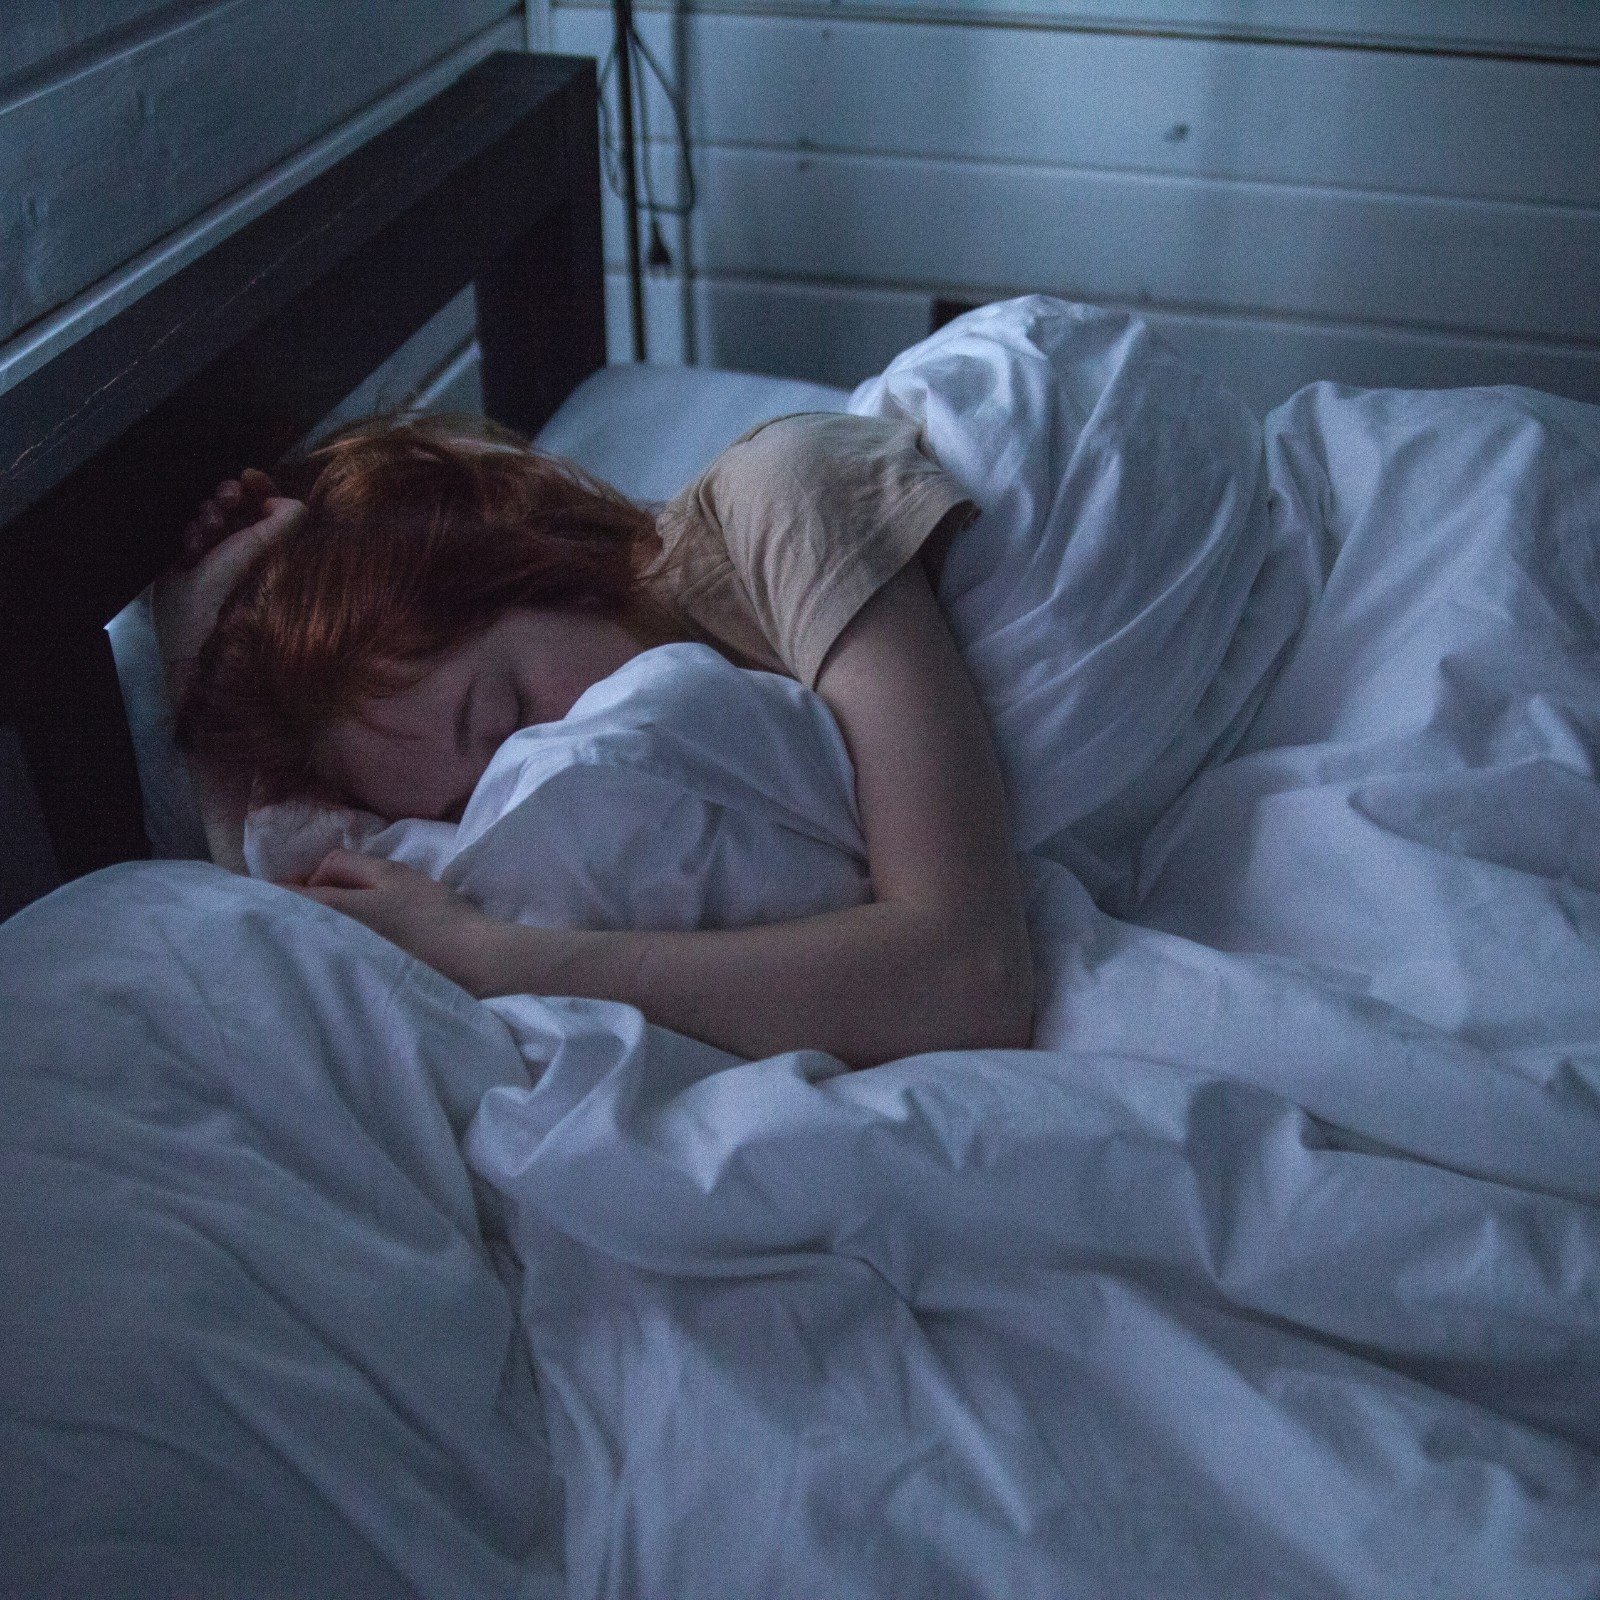 生活中总是有不少女生喜欢在睡觉时夹点什么,要么是枕头,要么是被子